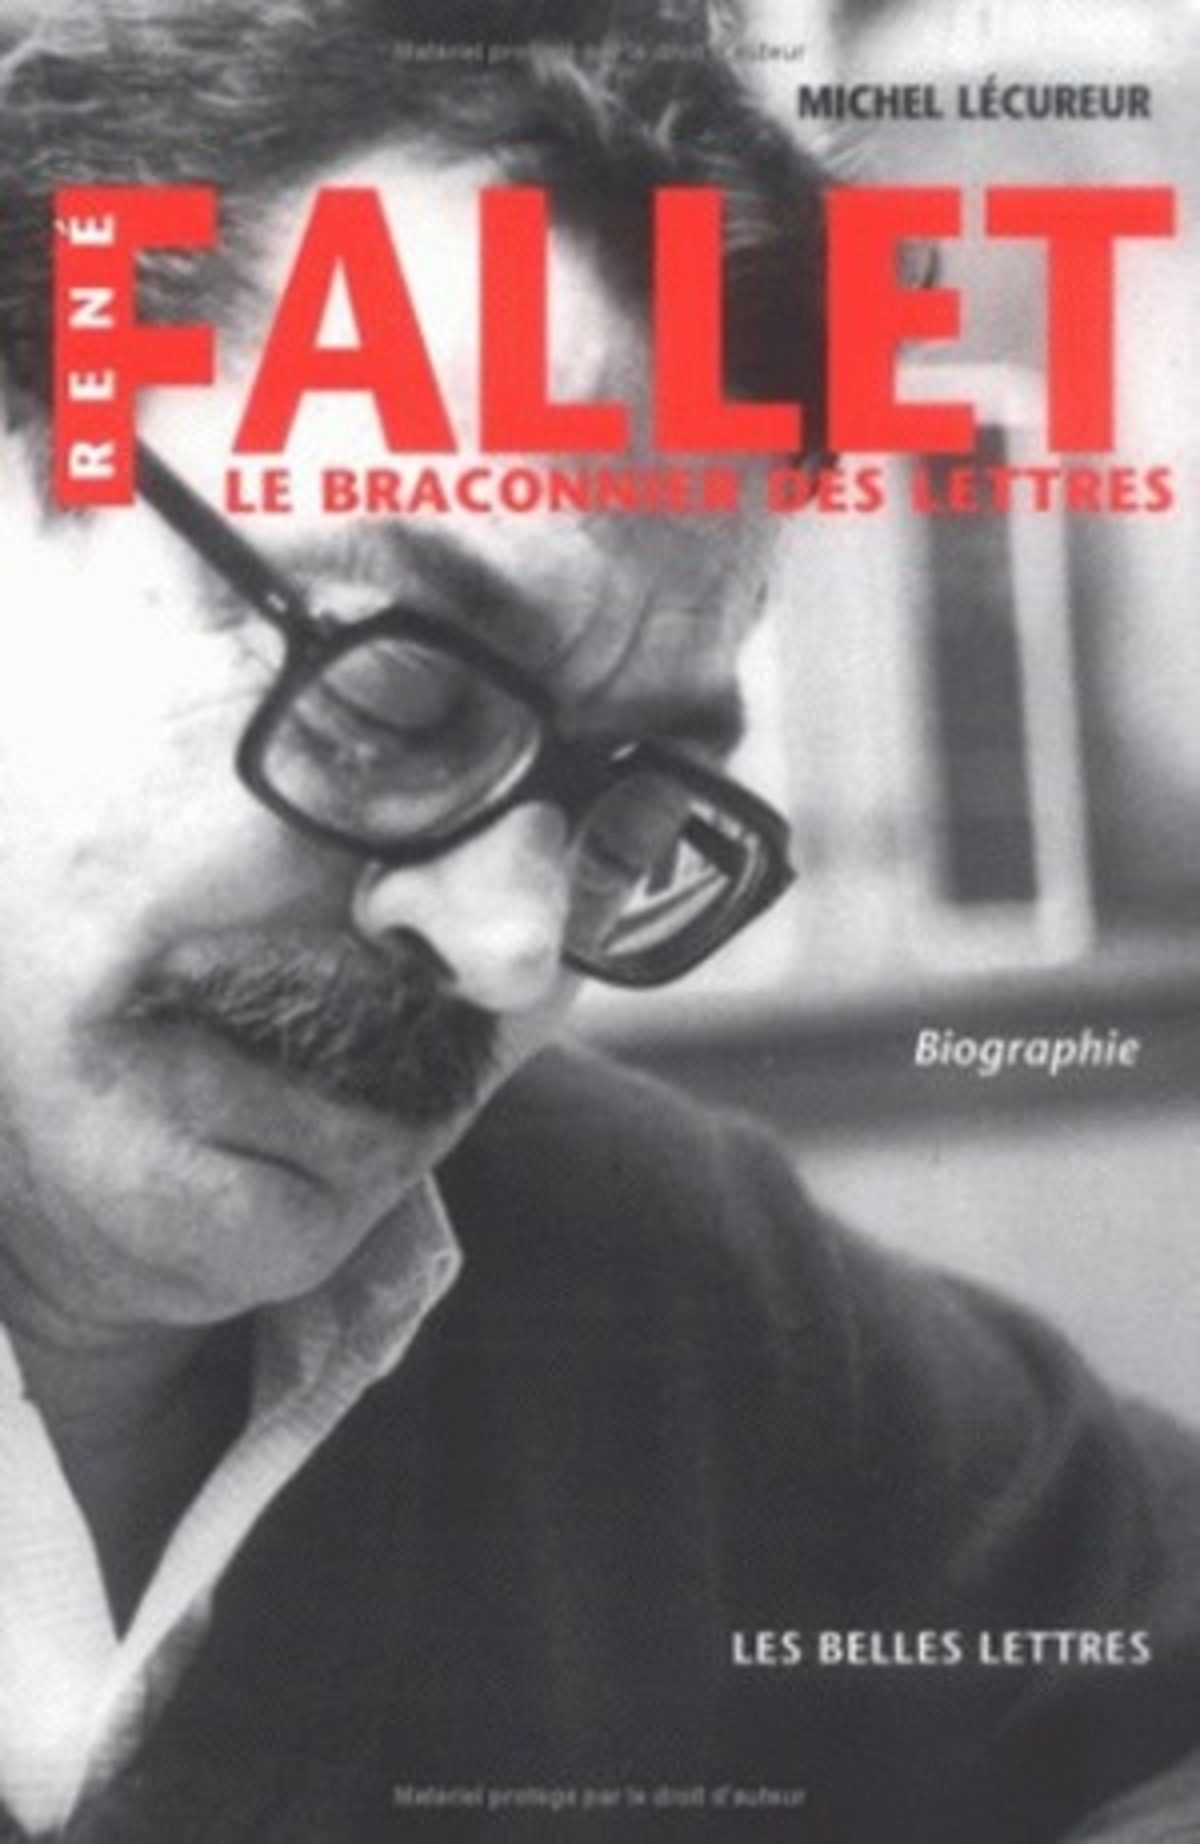 René Fallet